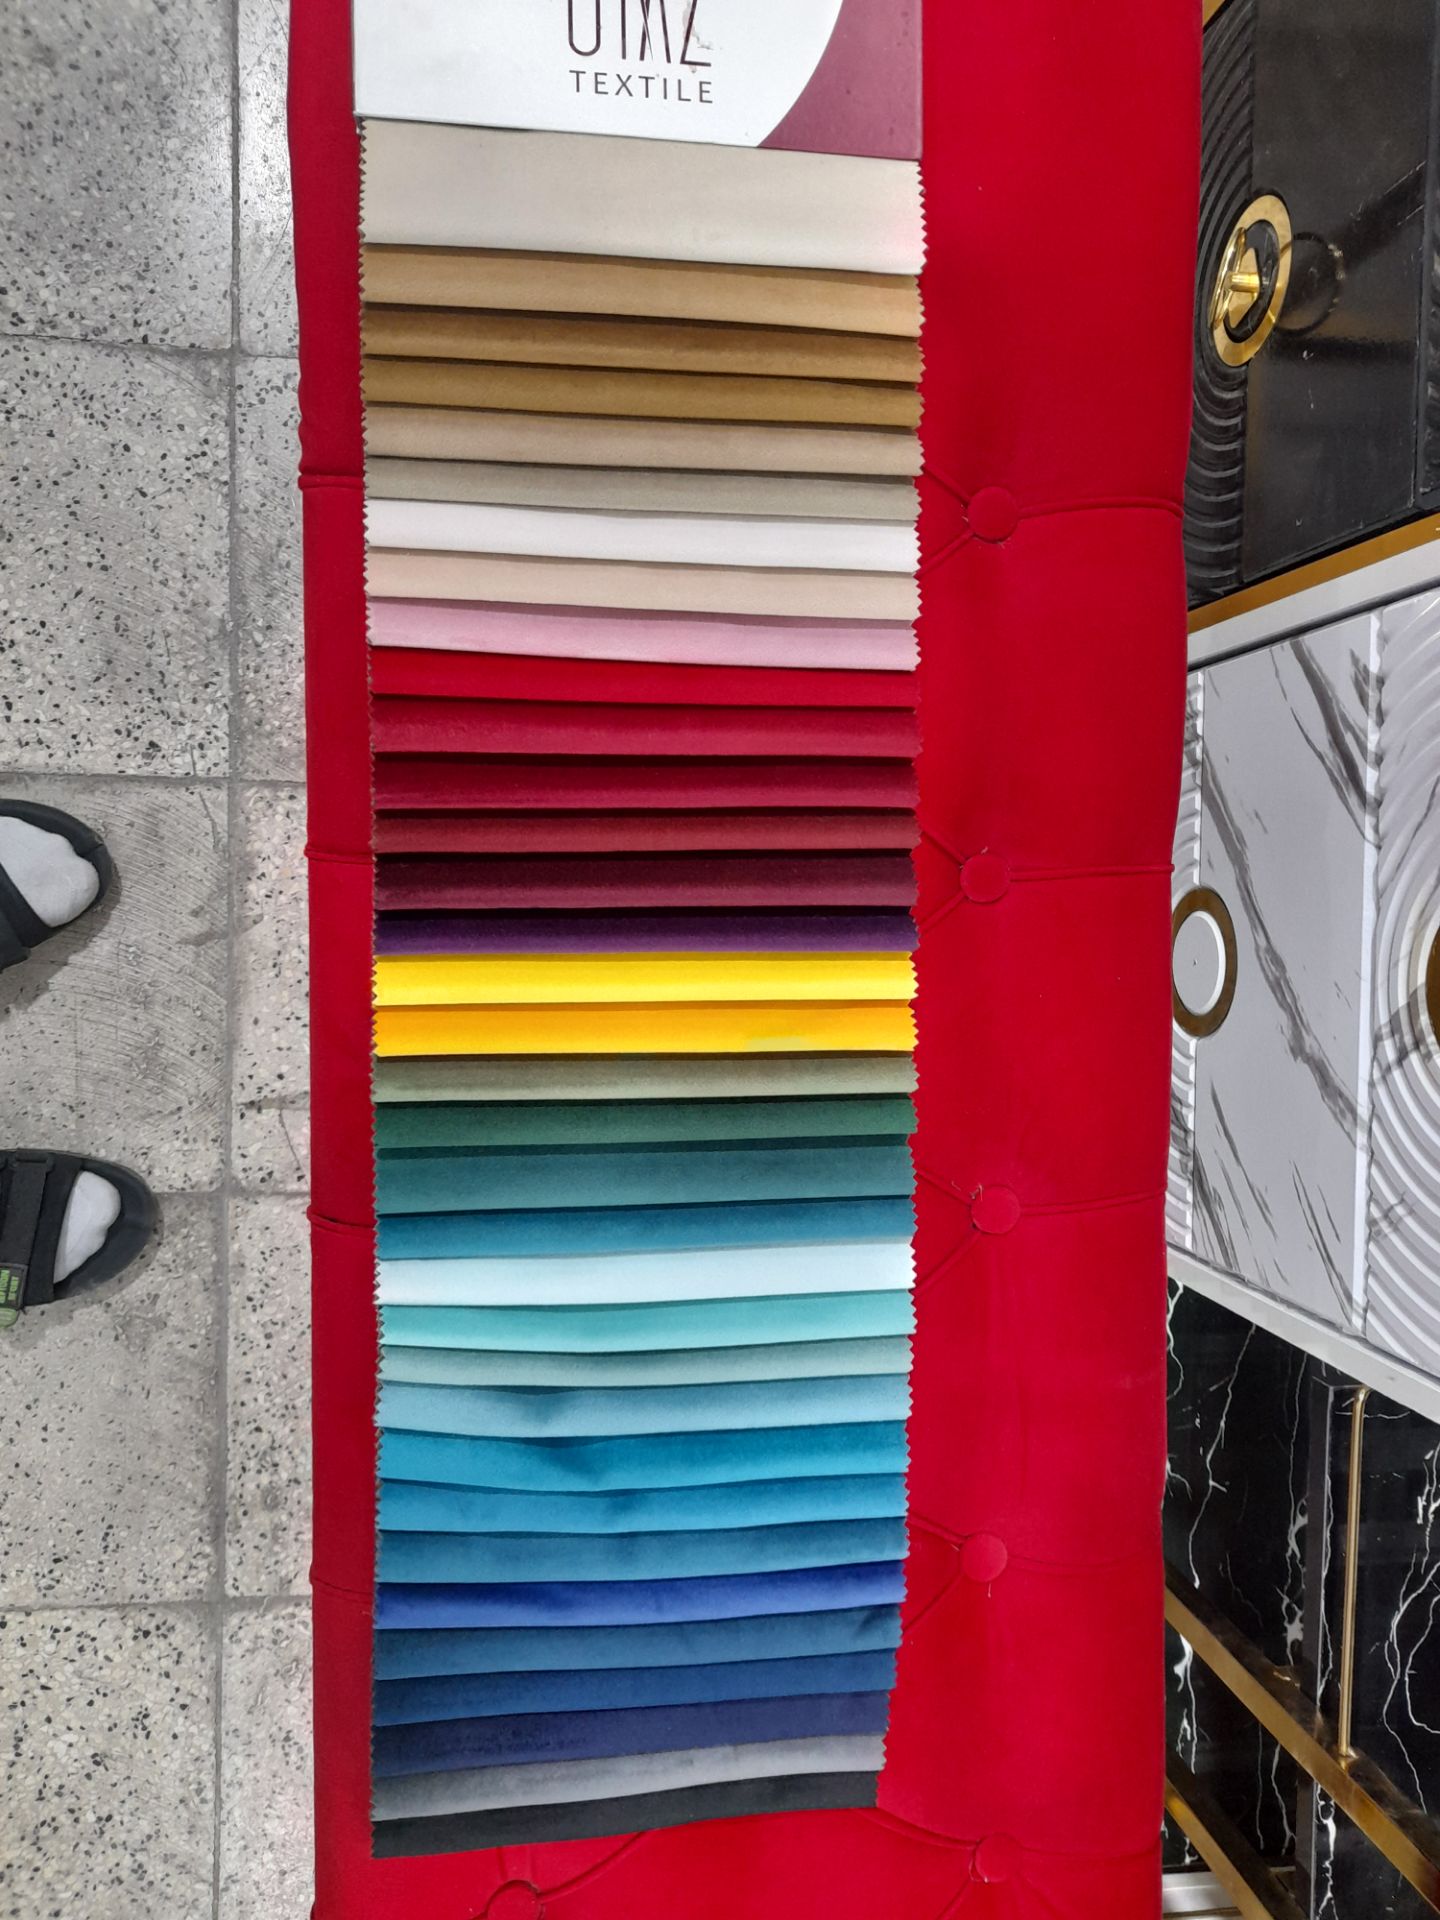 تخت مژه پارچه خارجی دیاموند رنگ بندی مختلف پایه فورتیک آبکاری شده ارسال به سراسر ایران